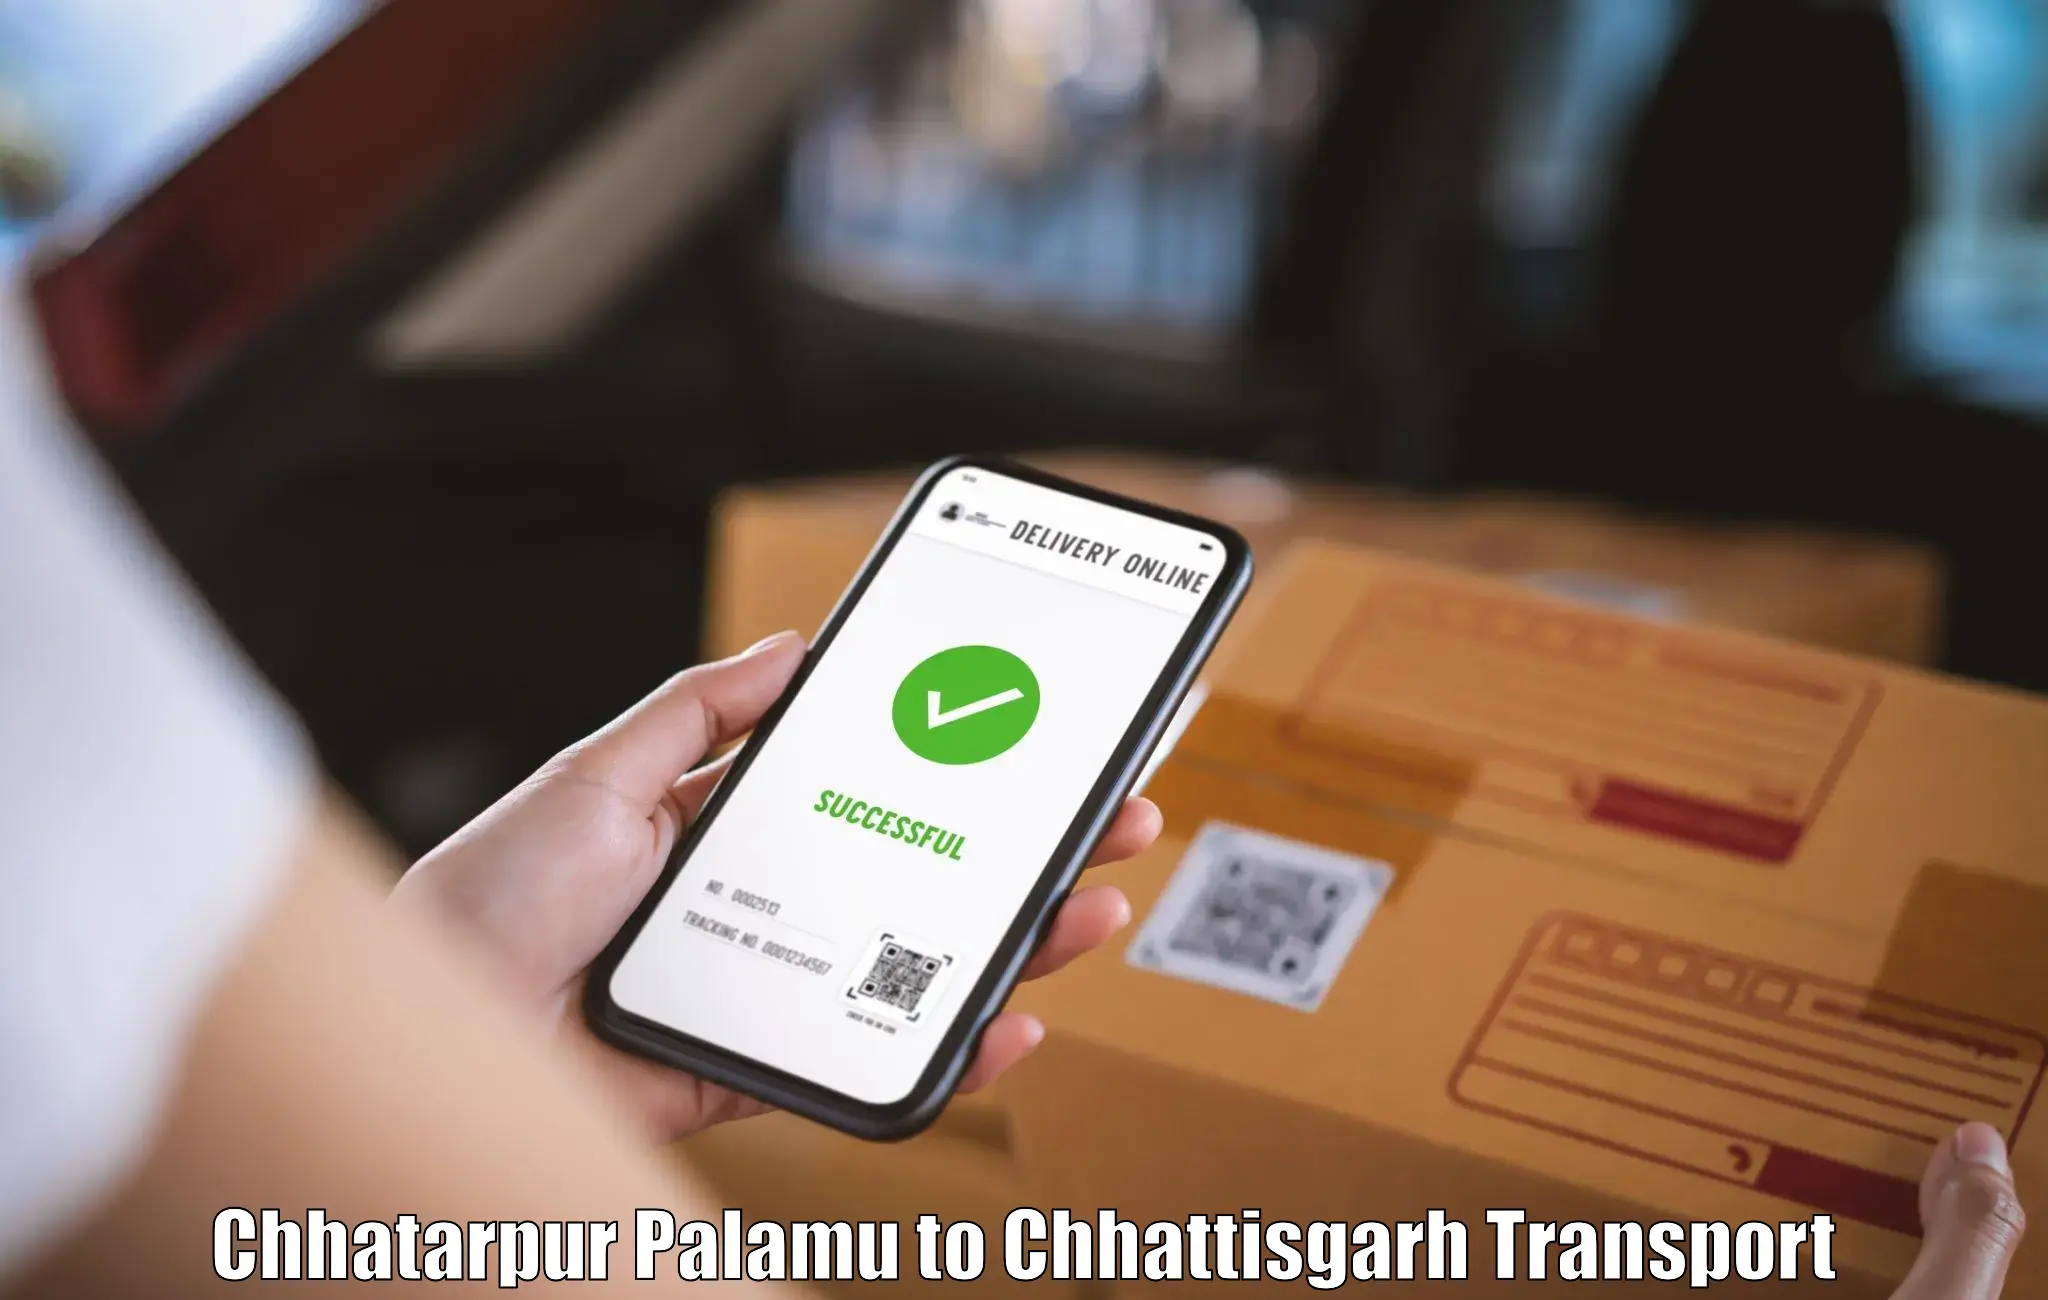 Air cargo transport services Chhatarpur Palamu to Jashpur